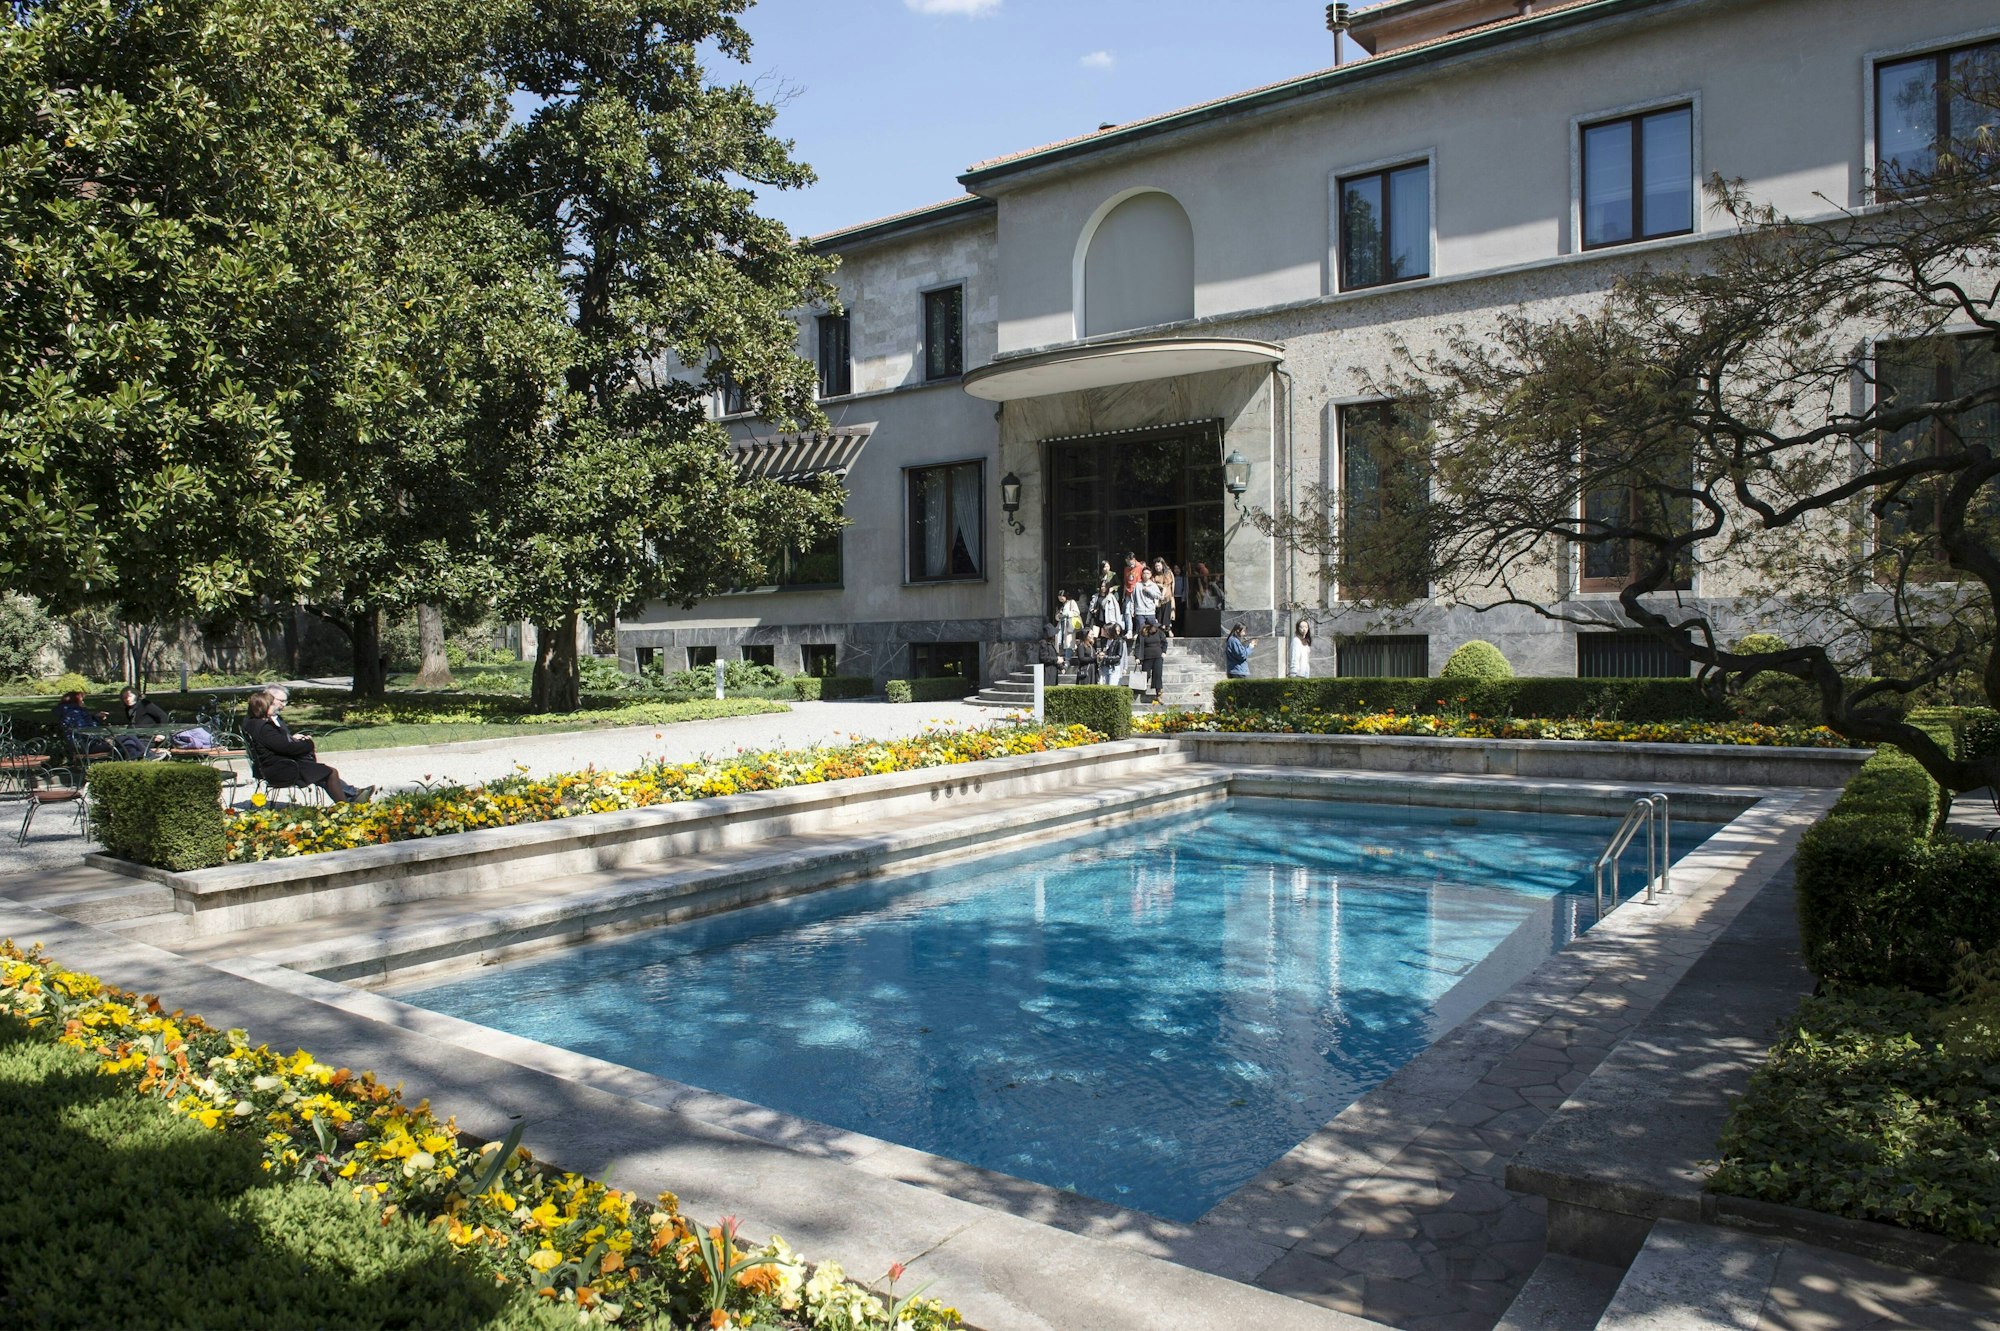 Die Villa Necchi Campiglio war der Ort des Gala-Dinners von Uniper.